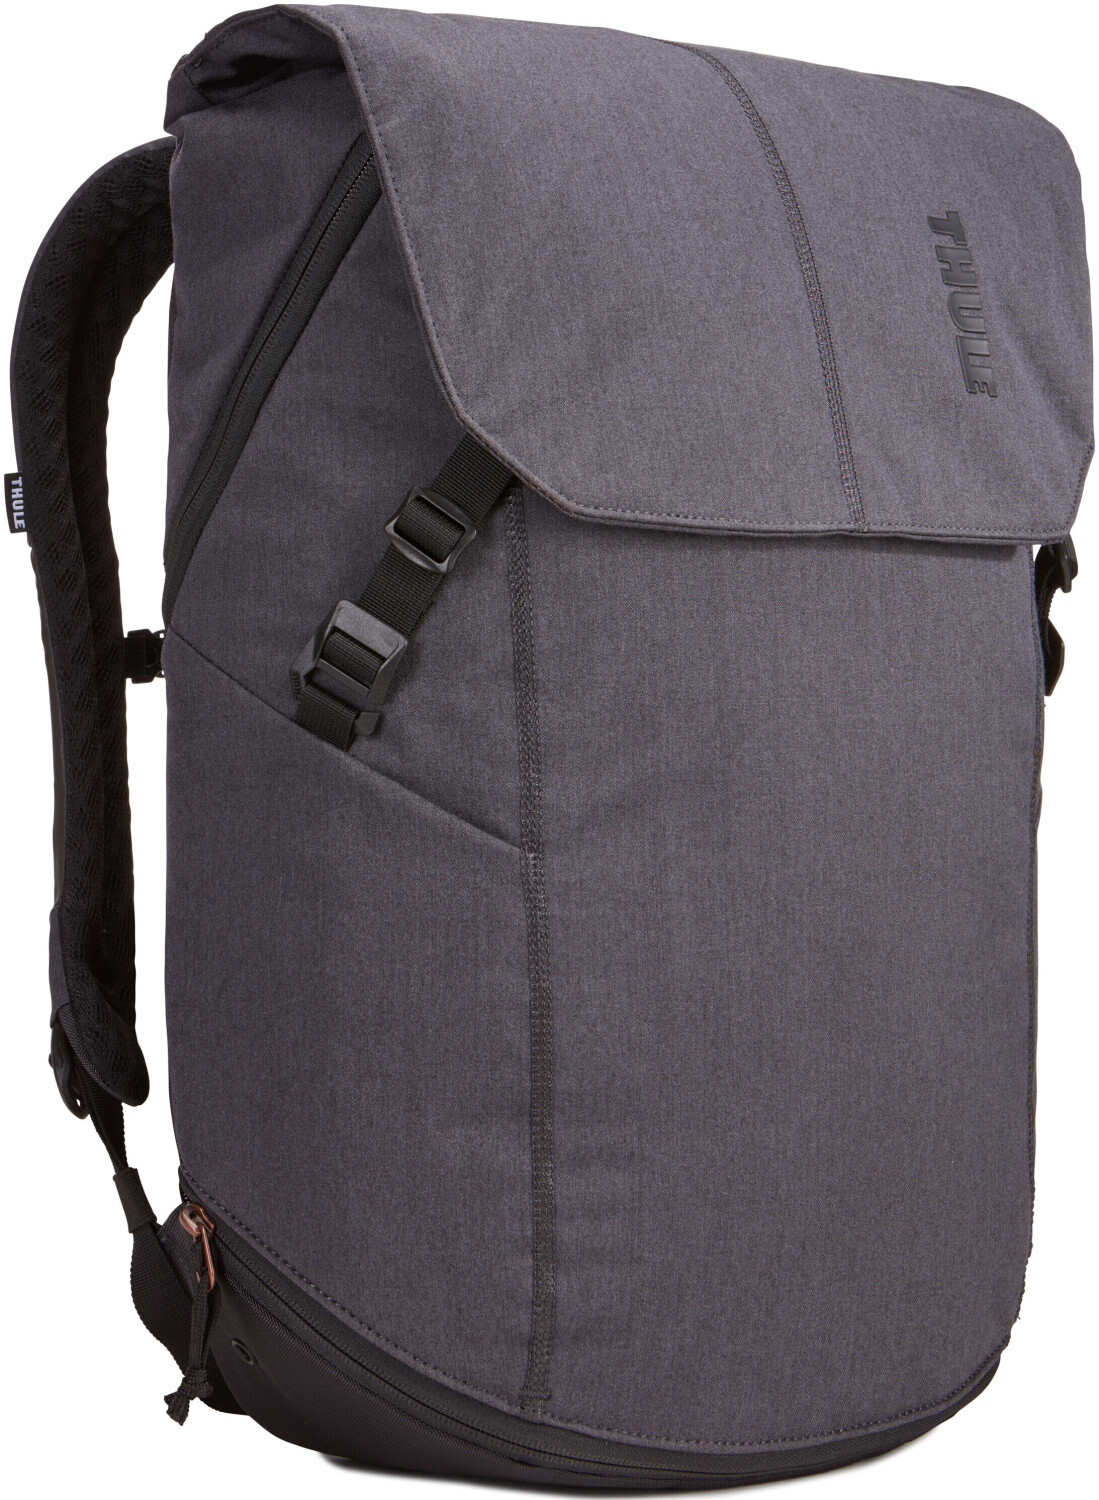 Thule Vea Backpack 25L ab 60,00 € | Preisvergleich bei idealo.de